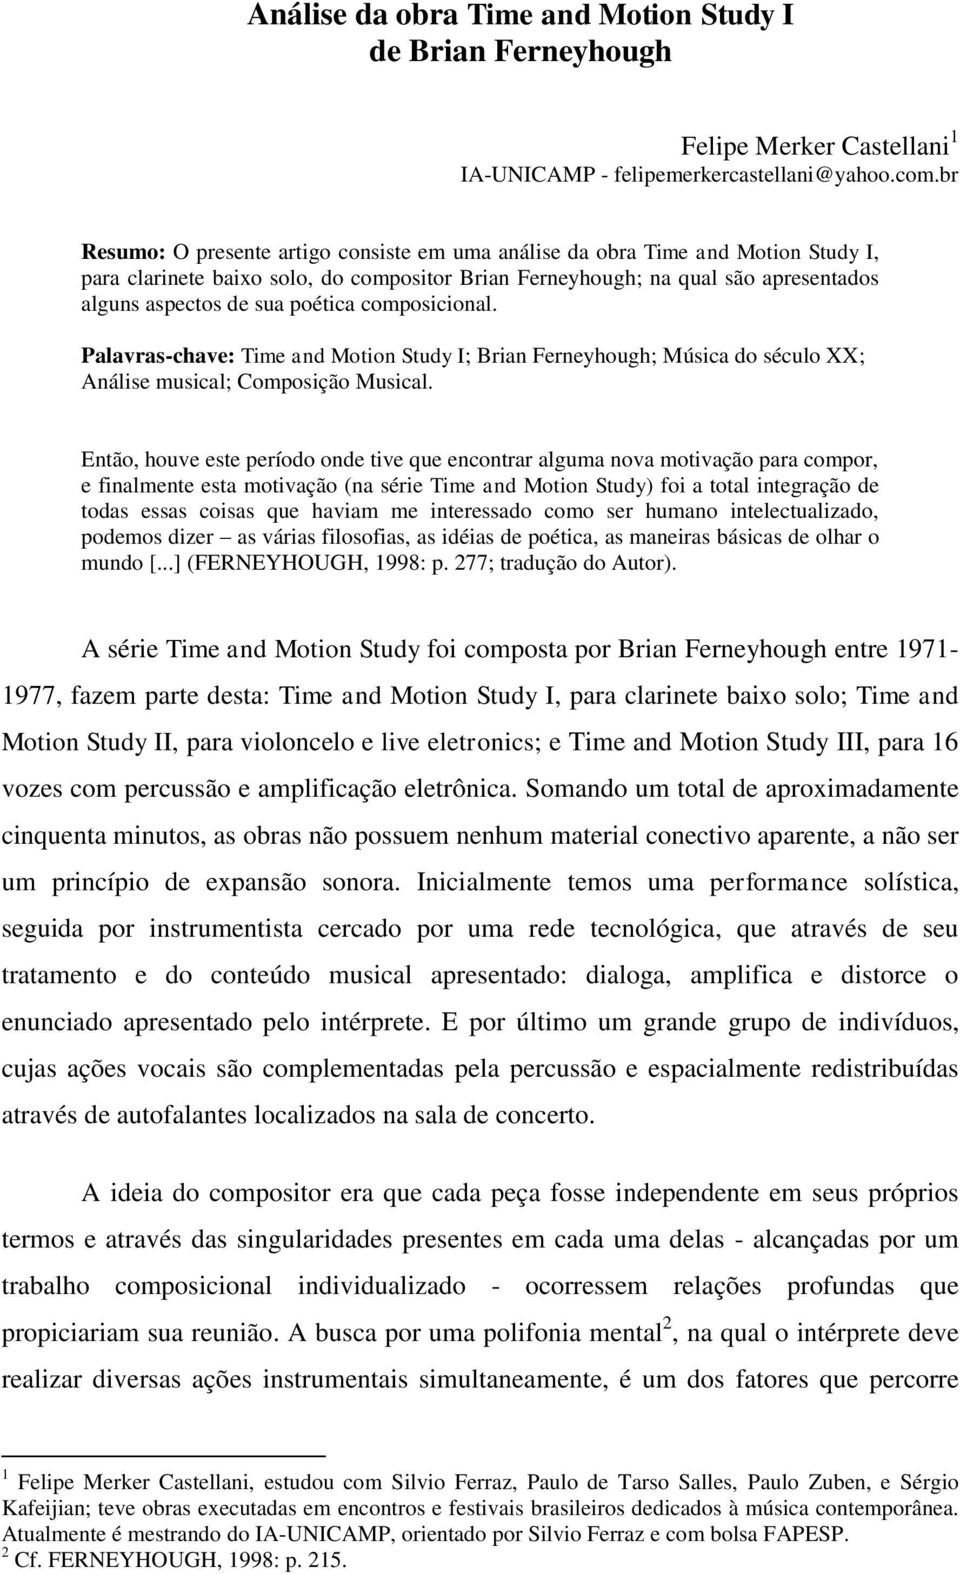 poética composicional. Palavras-chave: Time and Motion Study I; Brian Ferneyhough; Música do século XX; Análise musical; Composição Musical.